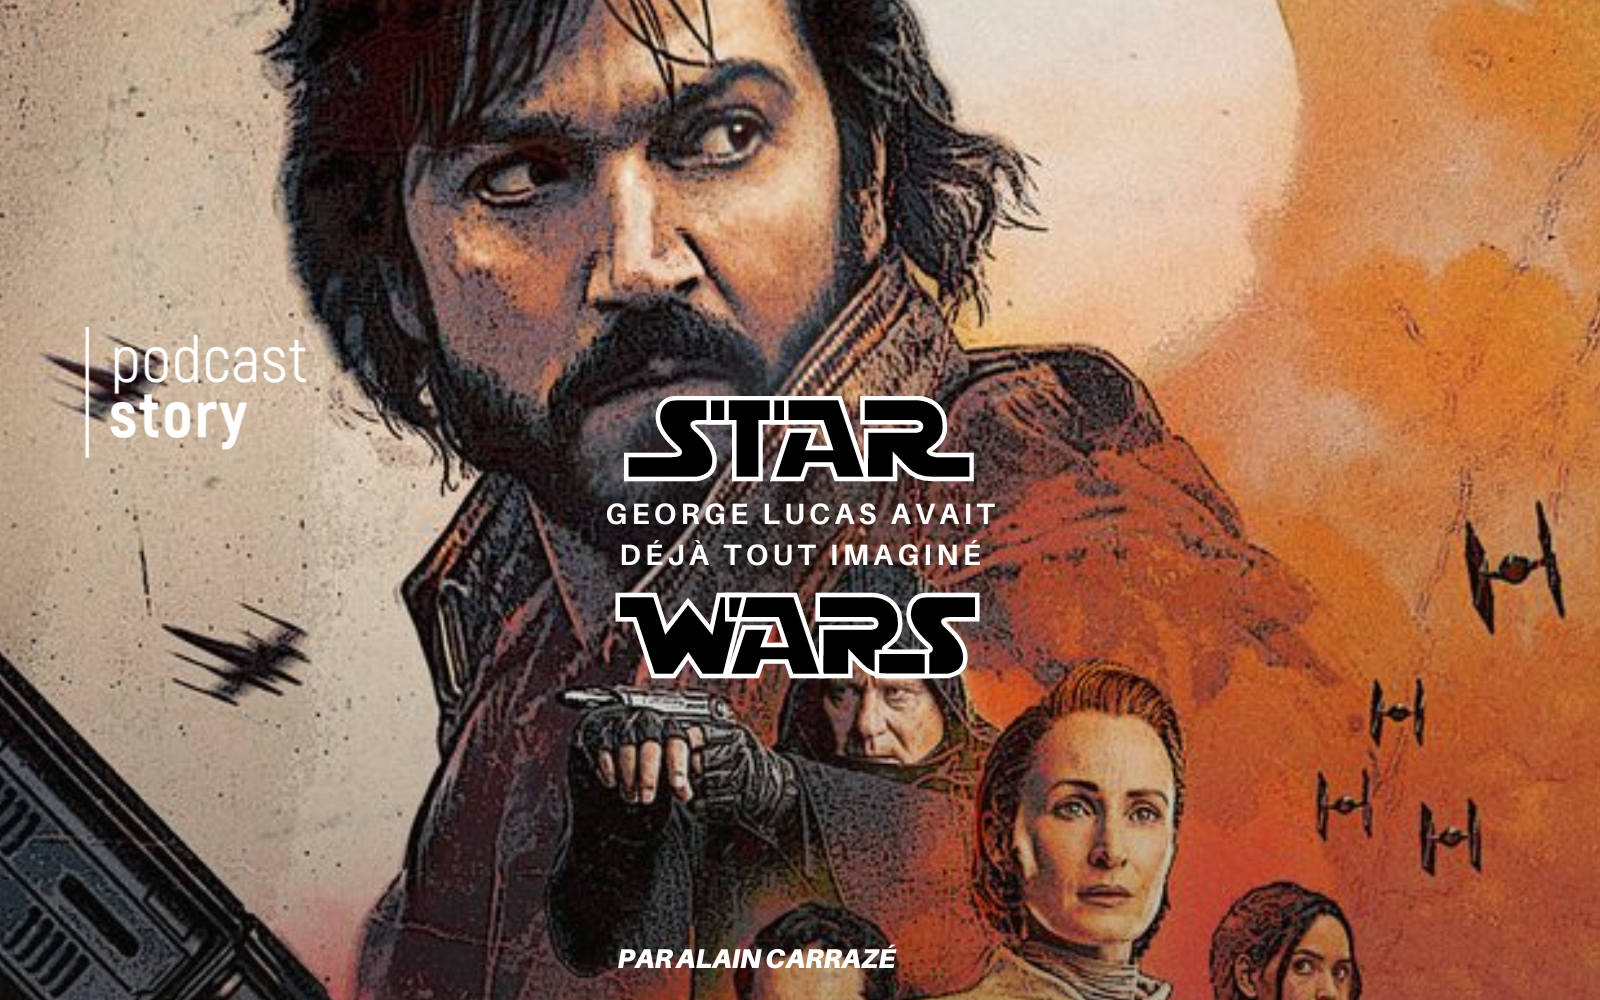 Star Wars – George Lucas avait déjà tout imaginé !